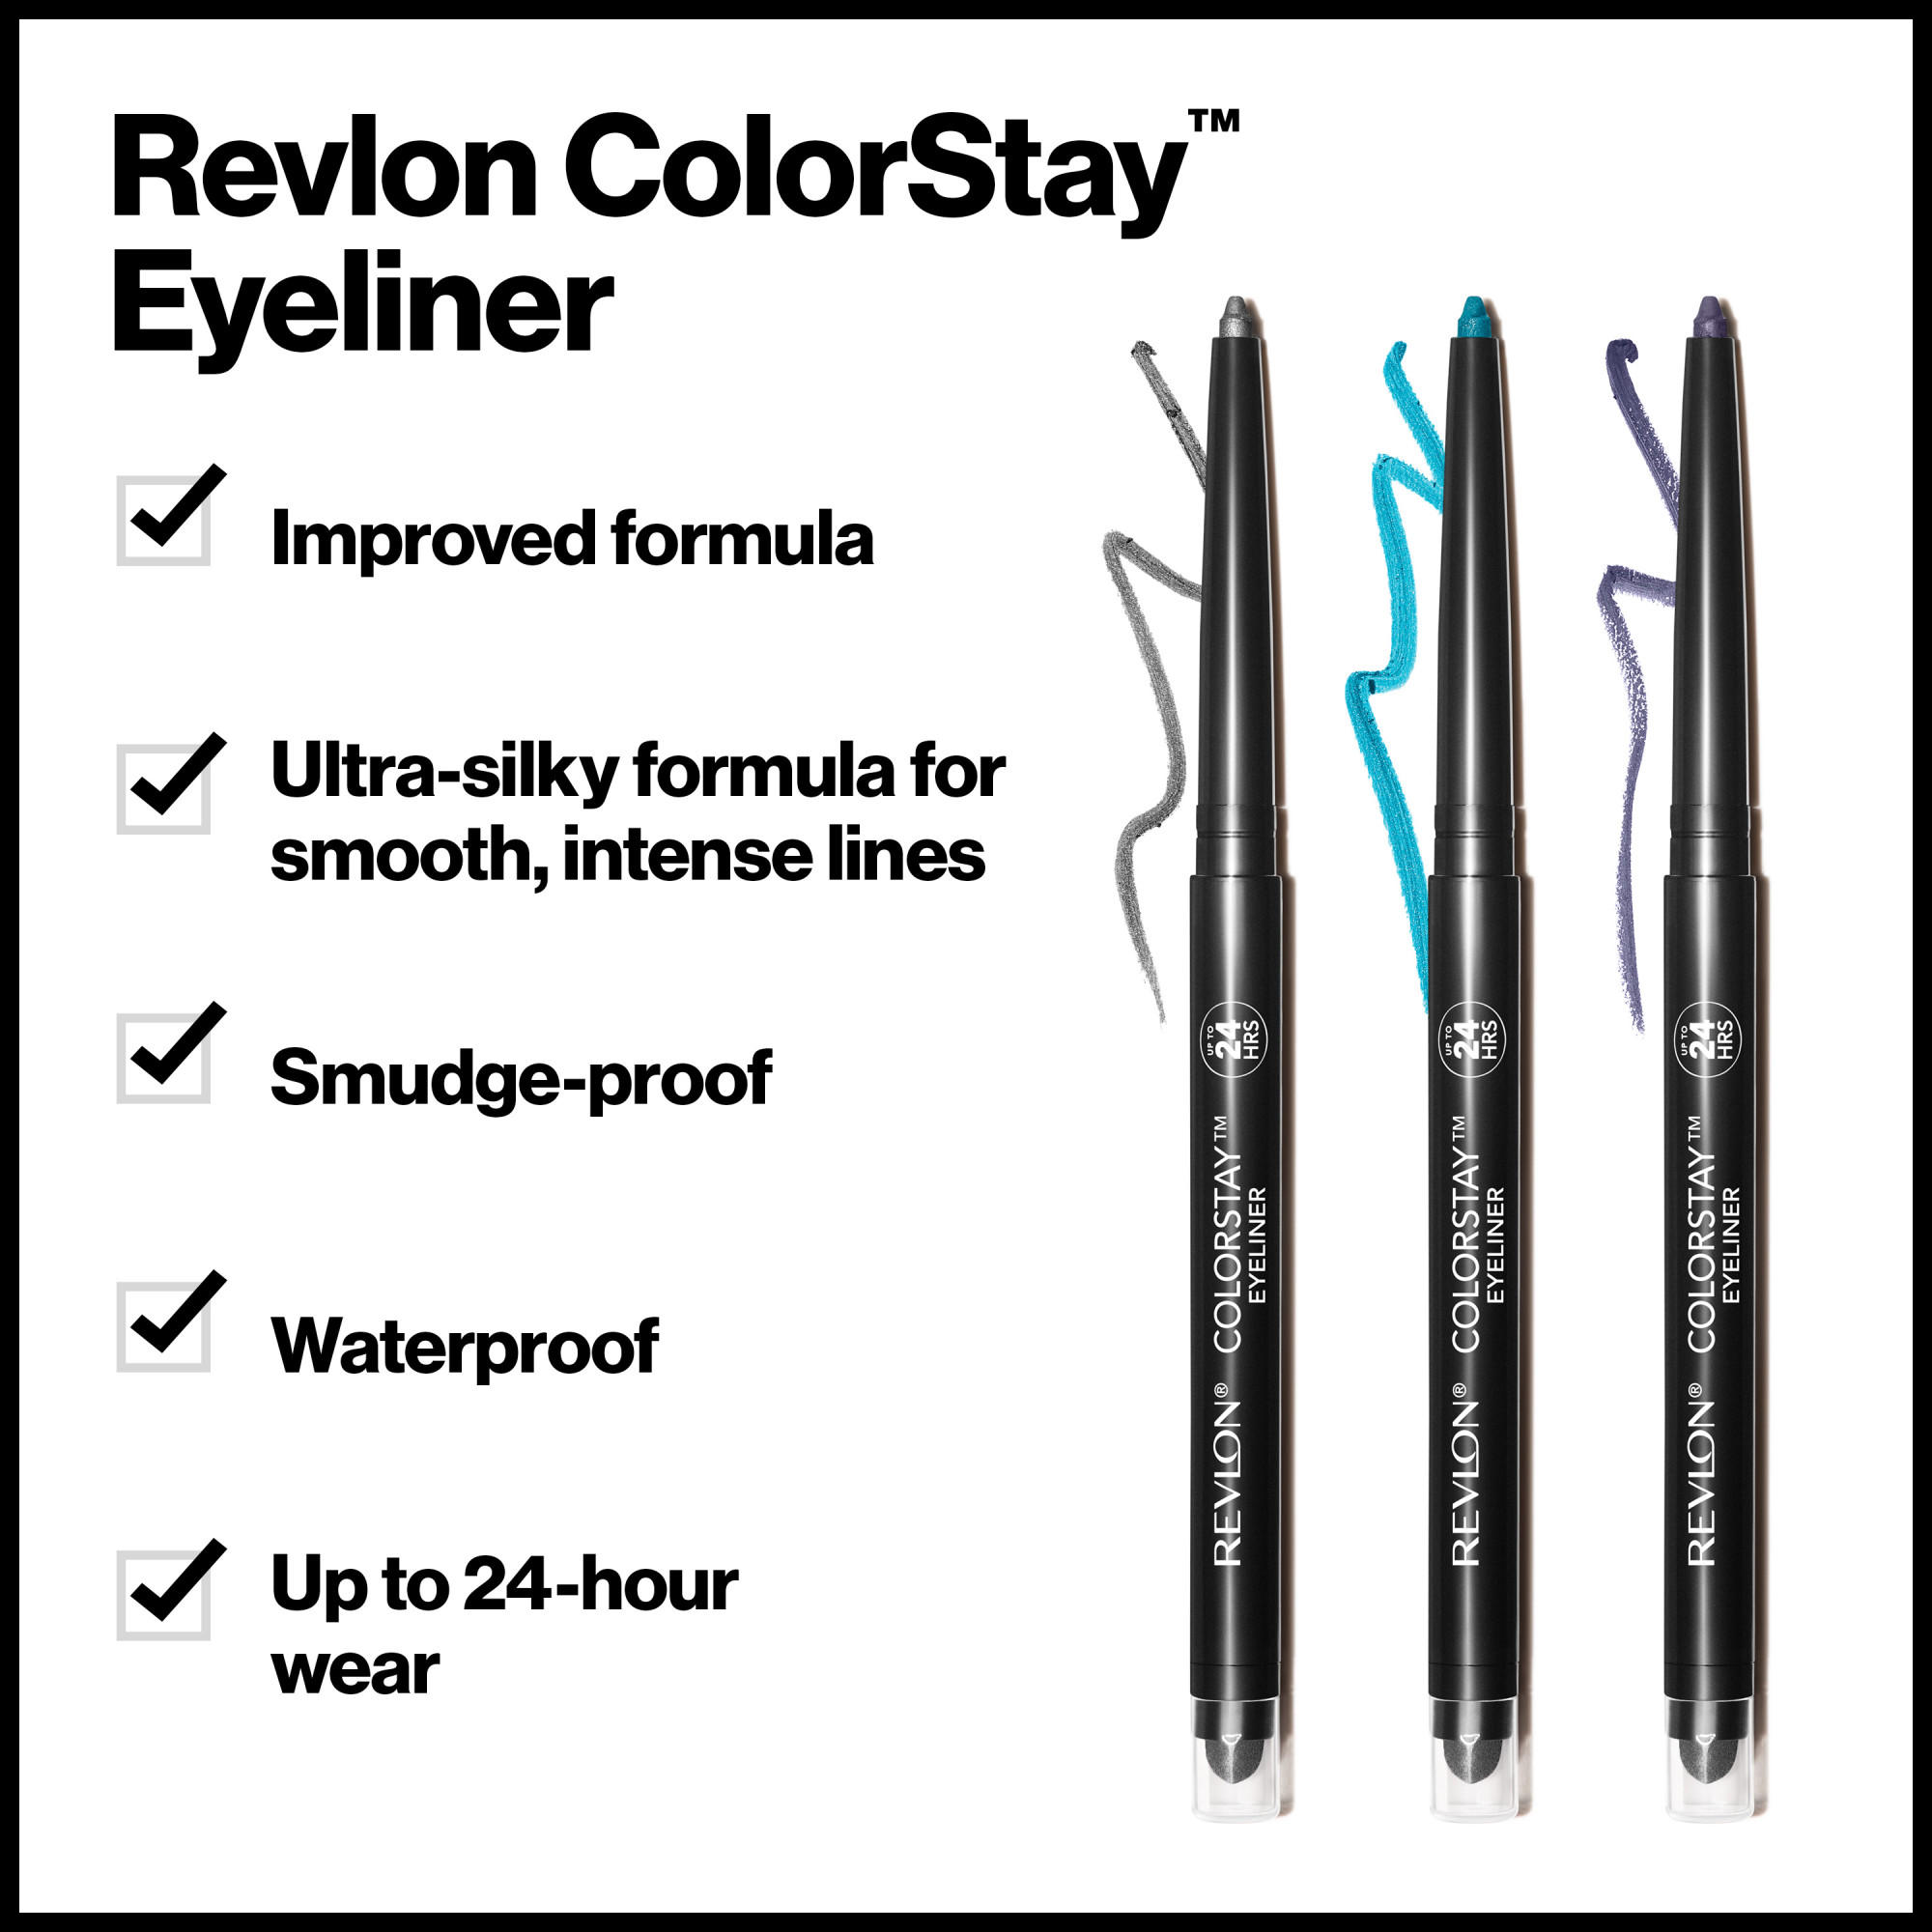 Revlon ColorStay Waterproof Eyeliner Pencil, 24HR Wear, Built-in Sharpener, 202 Black Brown, 0.01 oz - image 5 of 9